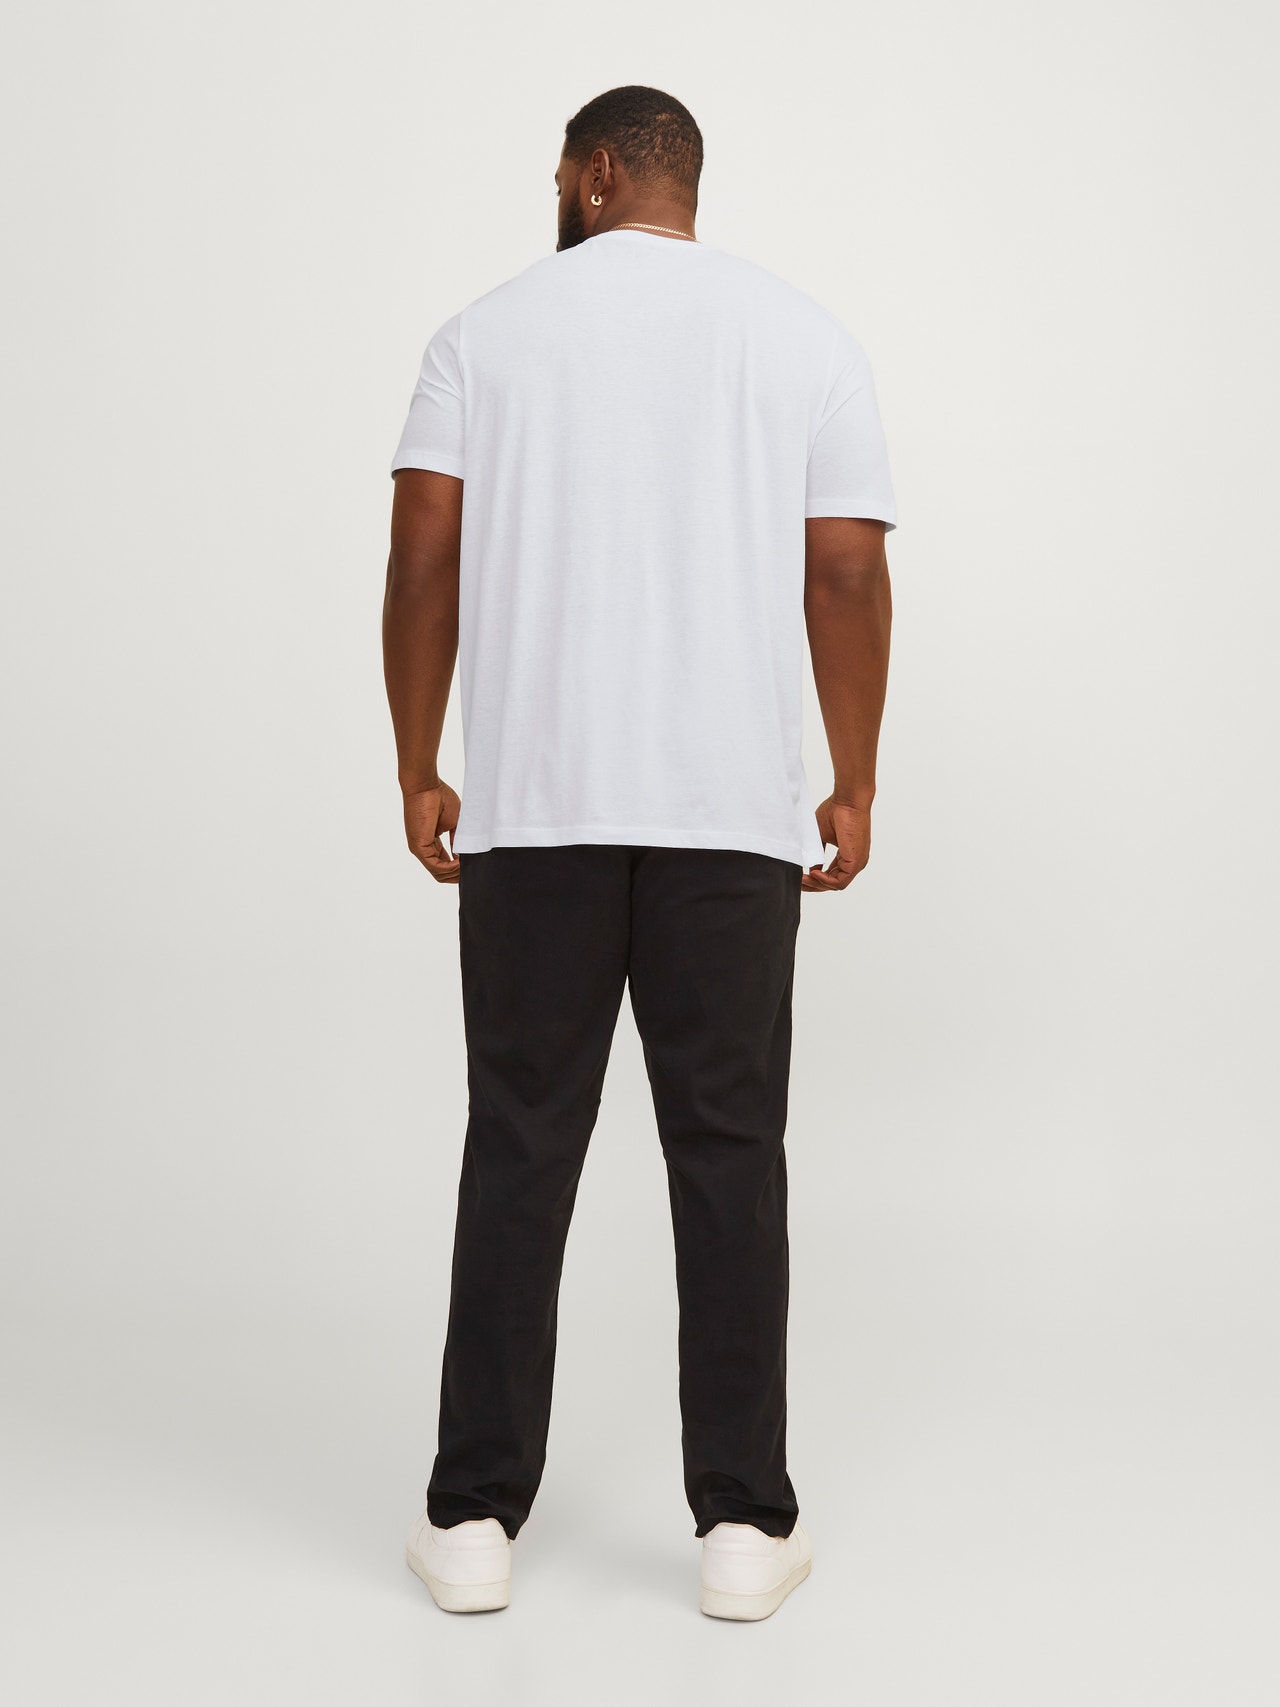 Jack & Jones Plus Size T-shirt Imprimé -White - 12254902